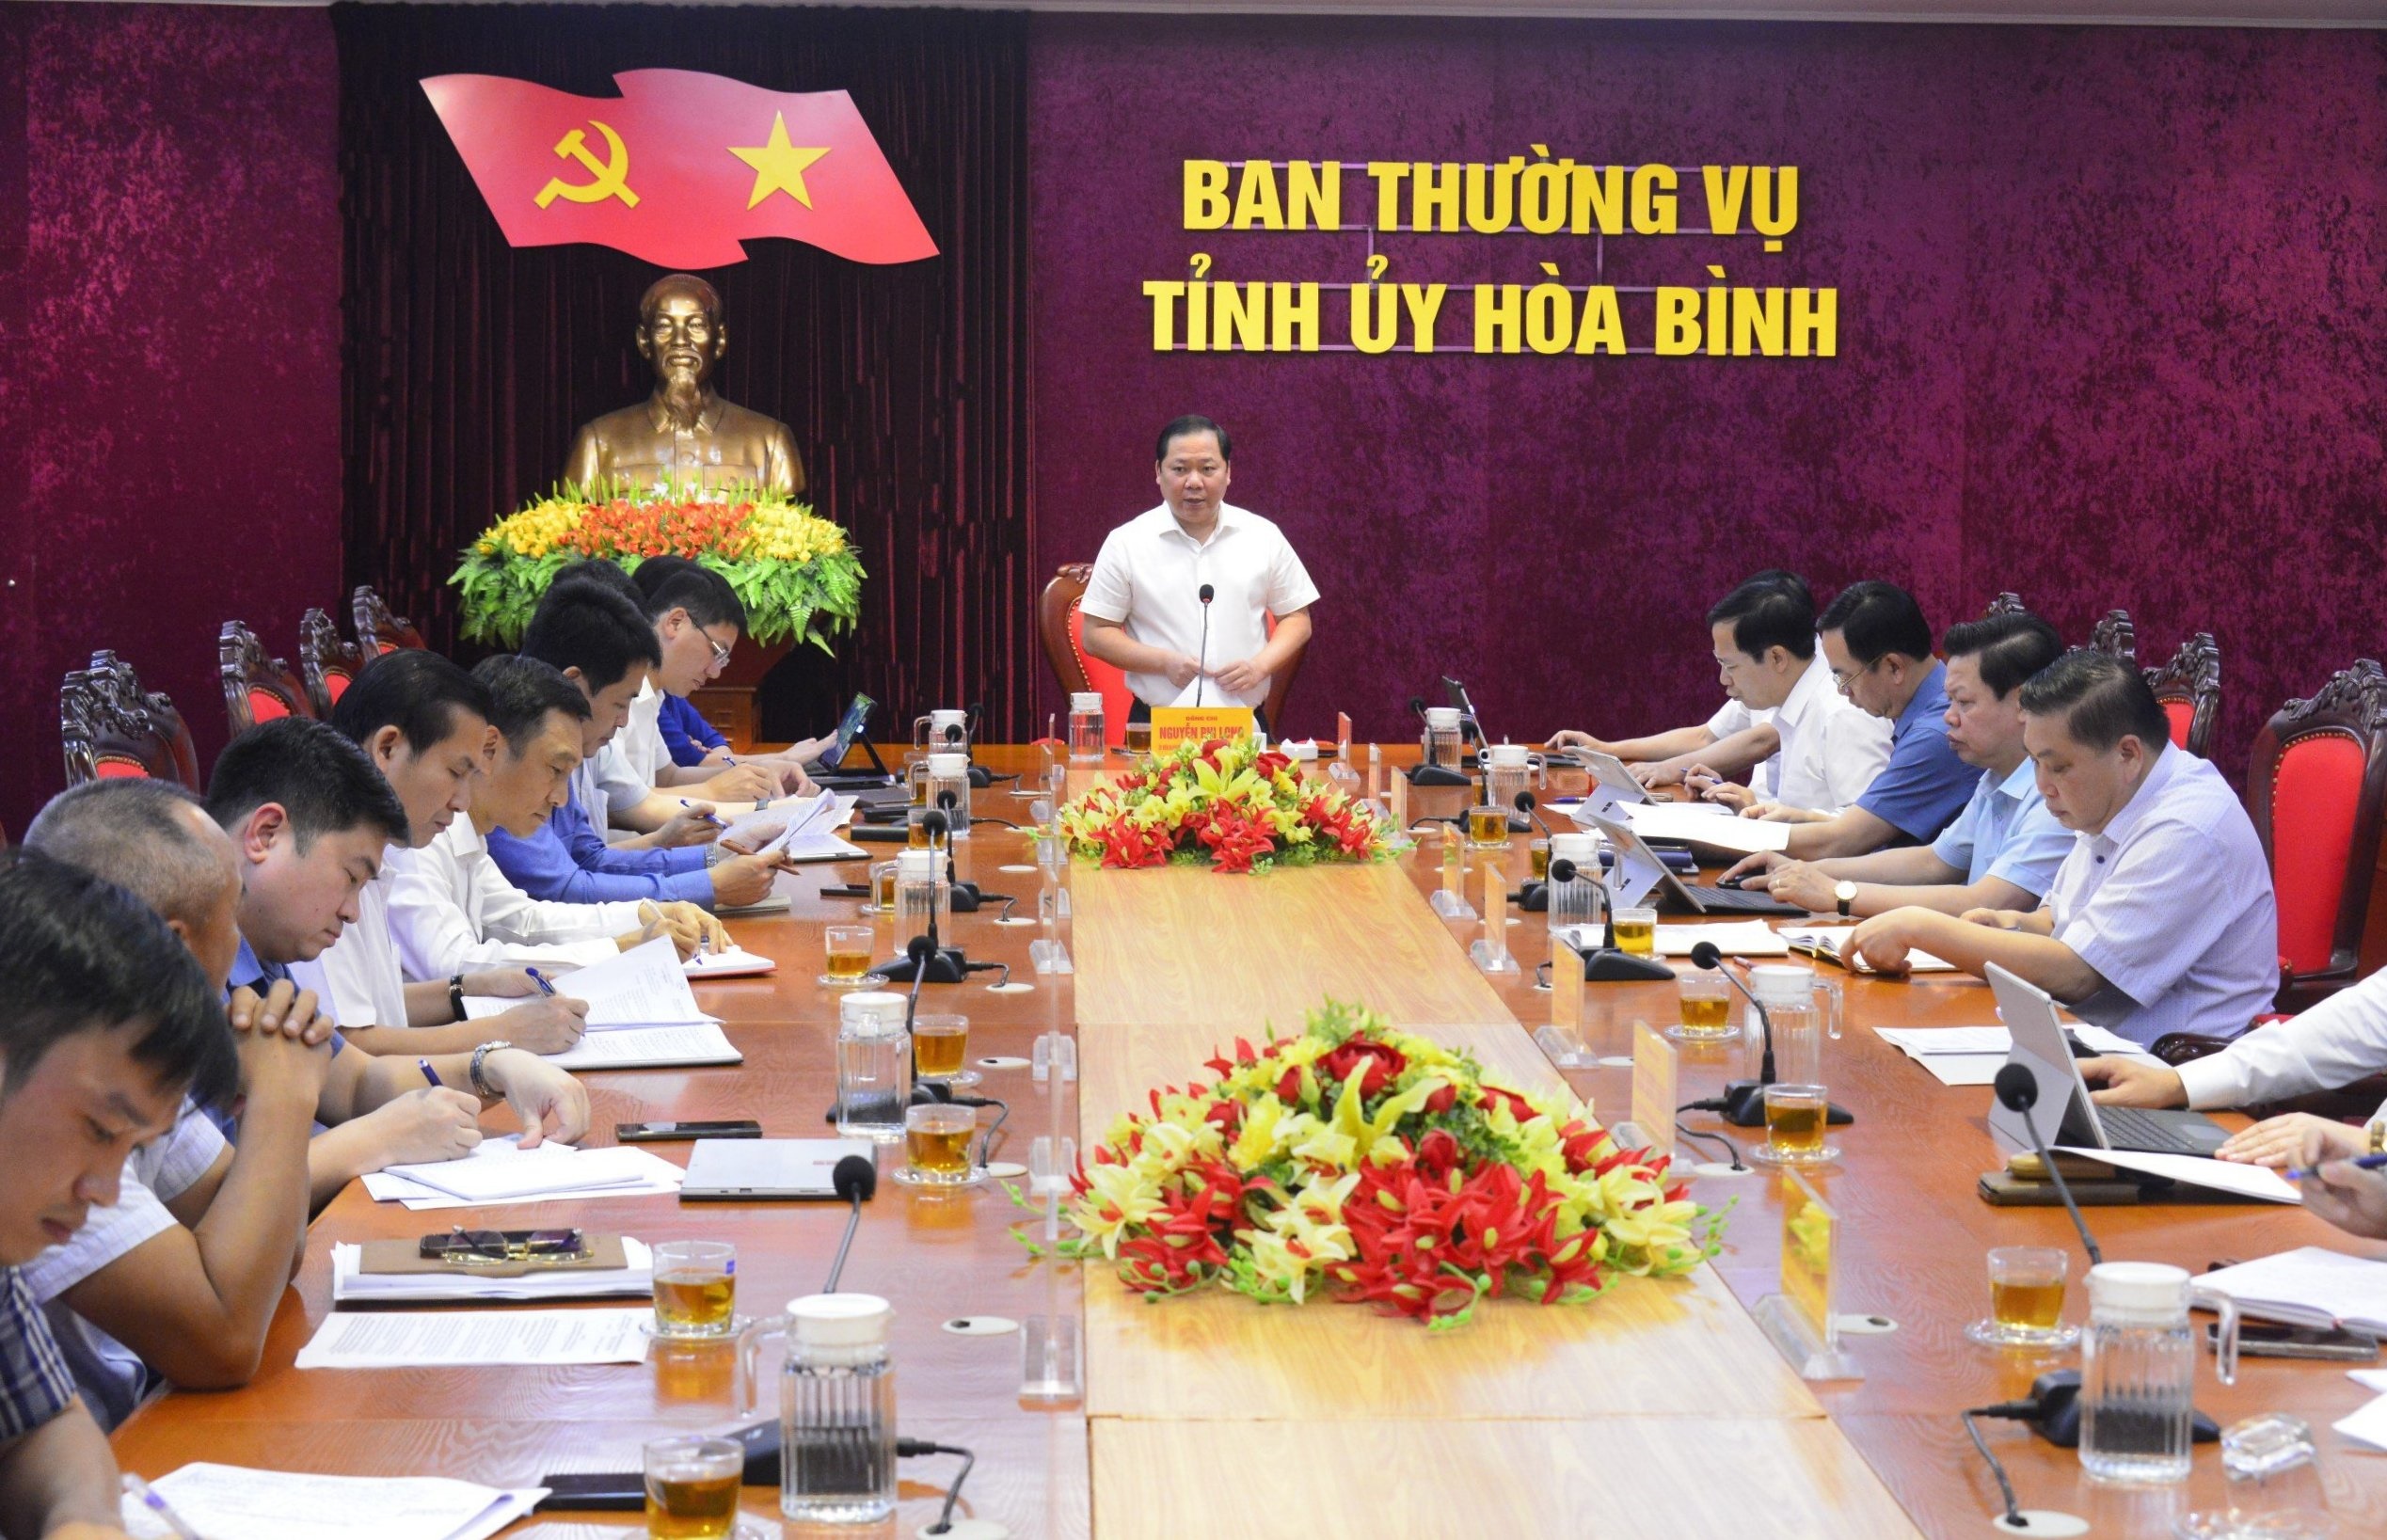 Đồng chí Nguyễn Phi Long, UV dự khuyết BCH TƯ Đảng, Bí thư Tỉnh ủy, Trưởng BCĐ các dự án trọng điểm của tỉnh phát biểu chỉ đạo hội nghị.